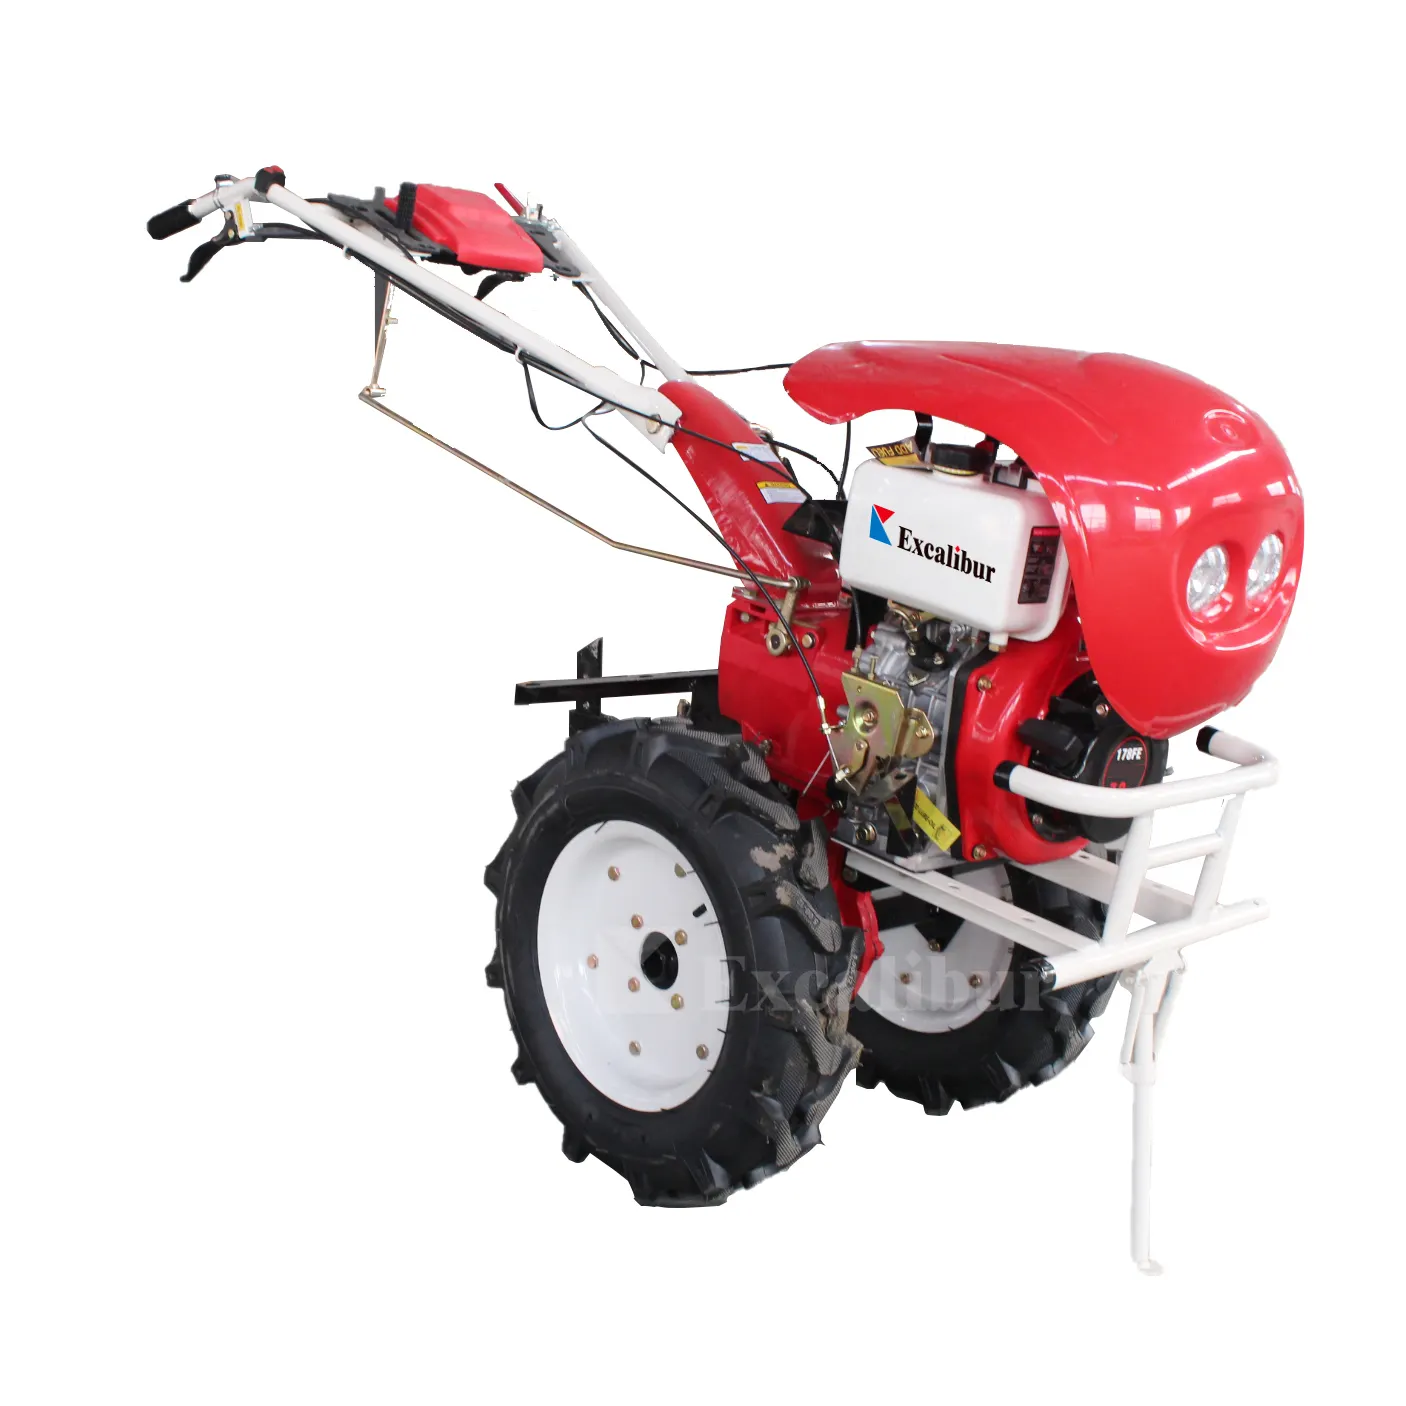 Excalibur-cultivador de energía eléctrico 10hp Diesel, cultivador rotativo usado con cosechadora de patatas